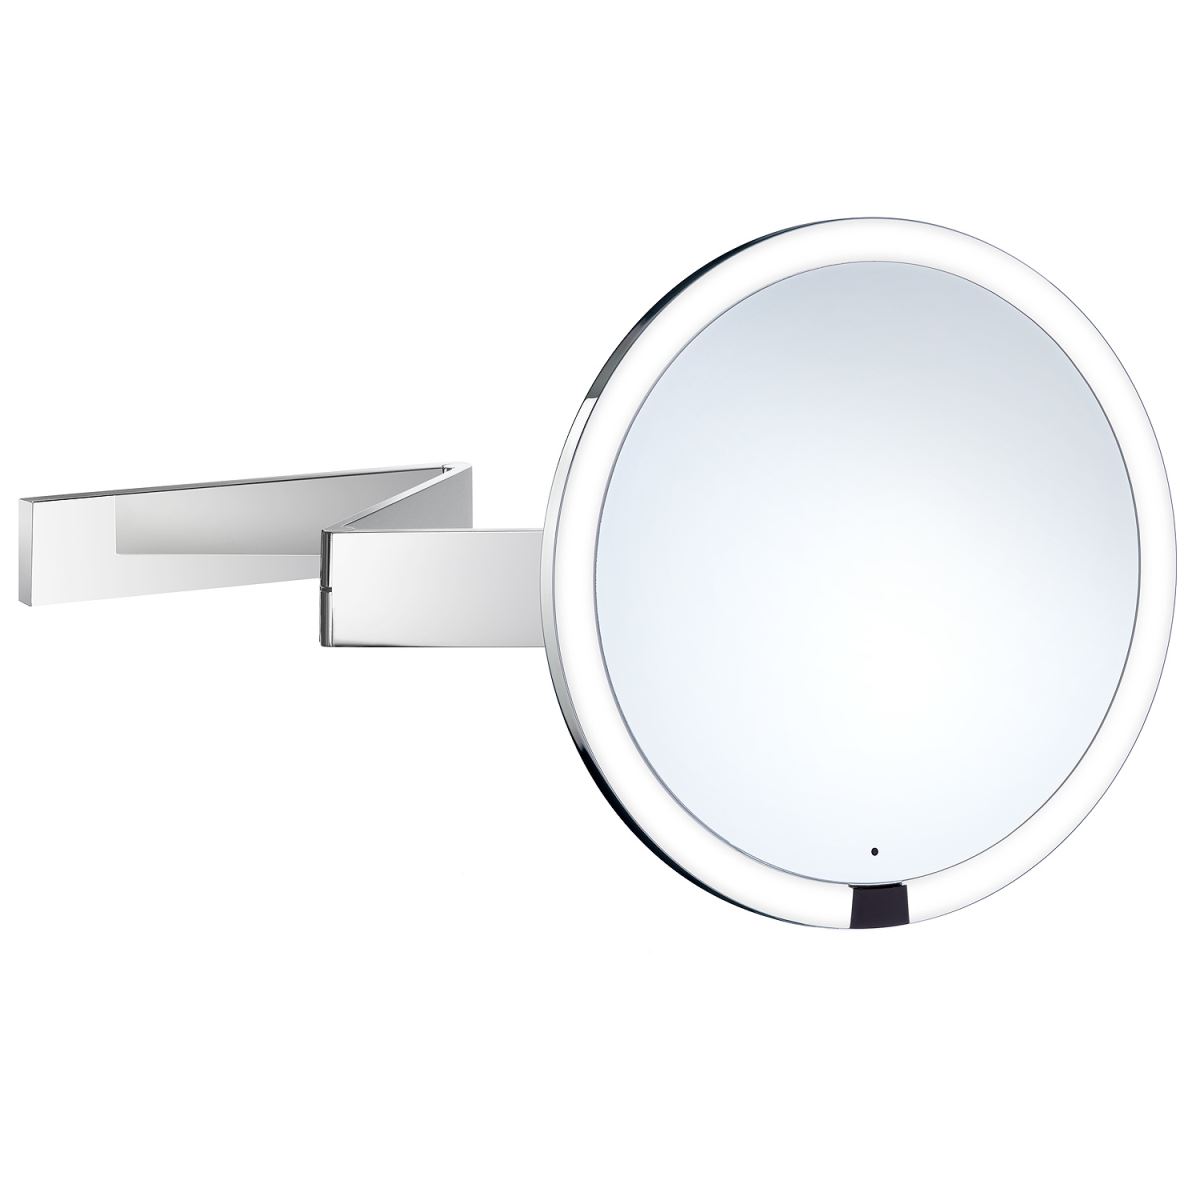 Smedbo Outline Kosmetikspiegel berhrungslos mit LED-Beleuchtung PMMA rund 2-fach schwenkbar- Normale Ansicht und 7 Fach FK491EP unter Kosmetikspiegel > Spiegel > Bad und Sanitr